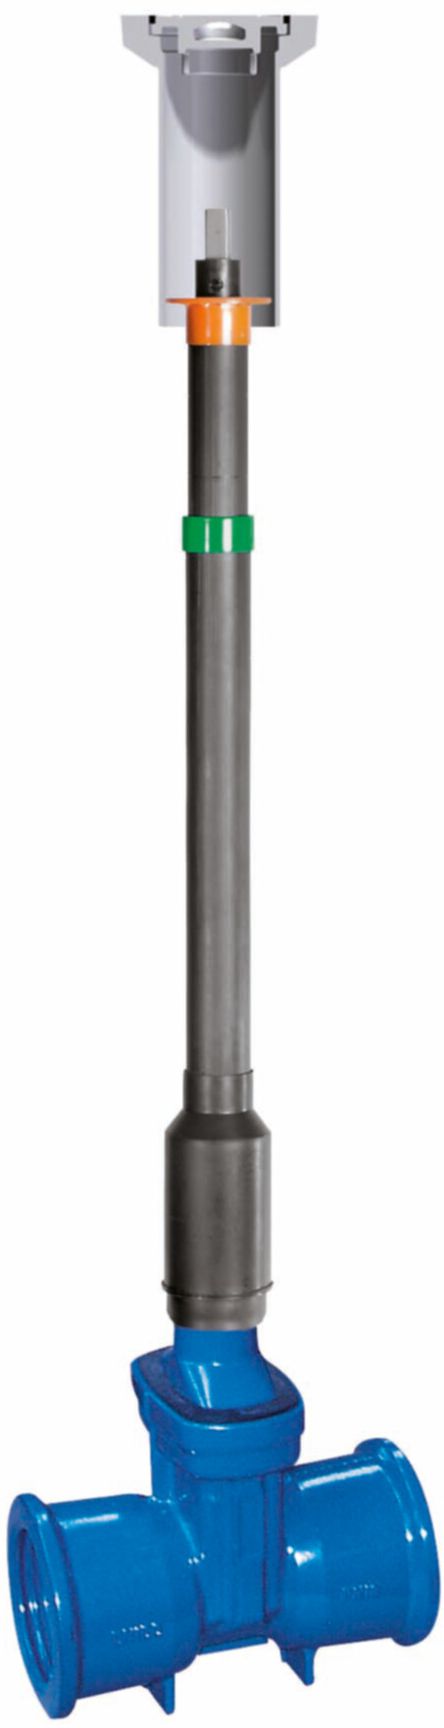 Teleskop-Einbaugarnitur Fig. 6895 L1 DN 100 GT 1.05 - 1.30 m - Von Roll Armaturen